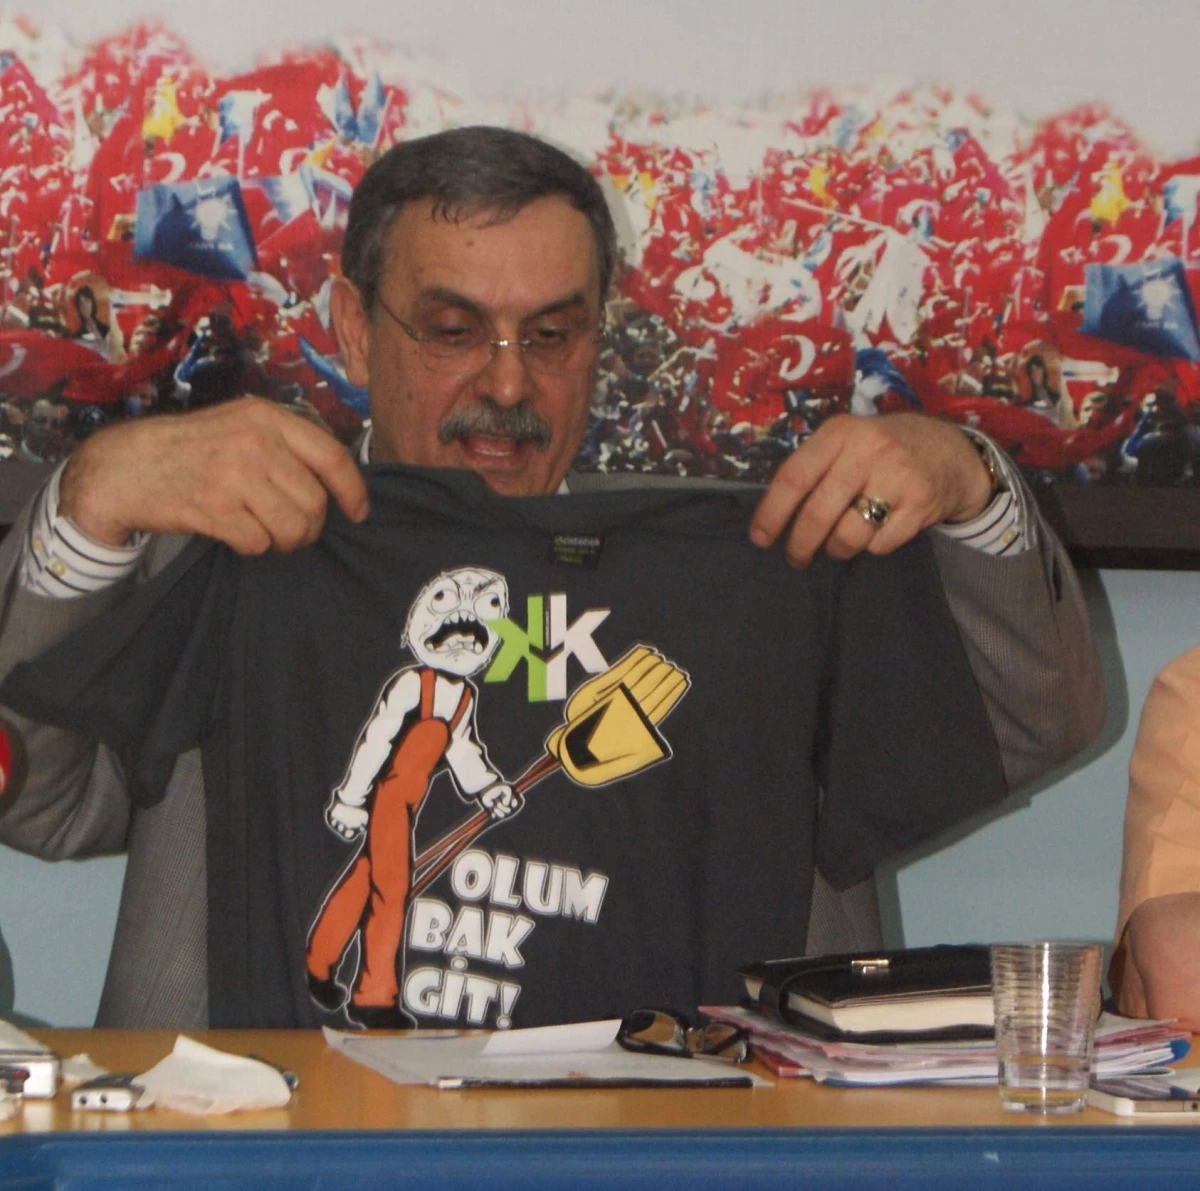 Milletvekilinden Belediye Başkanına "Oğlum Bak Git" Tişörtüyle Tepki